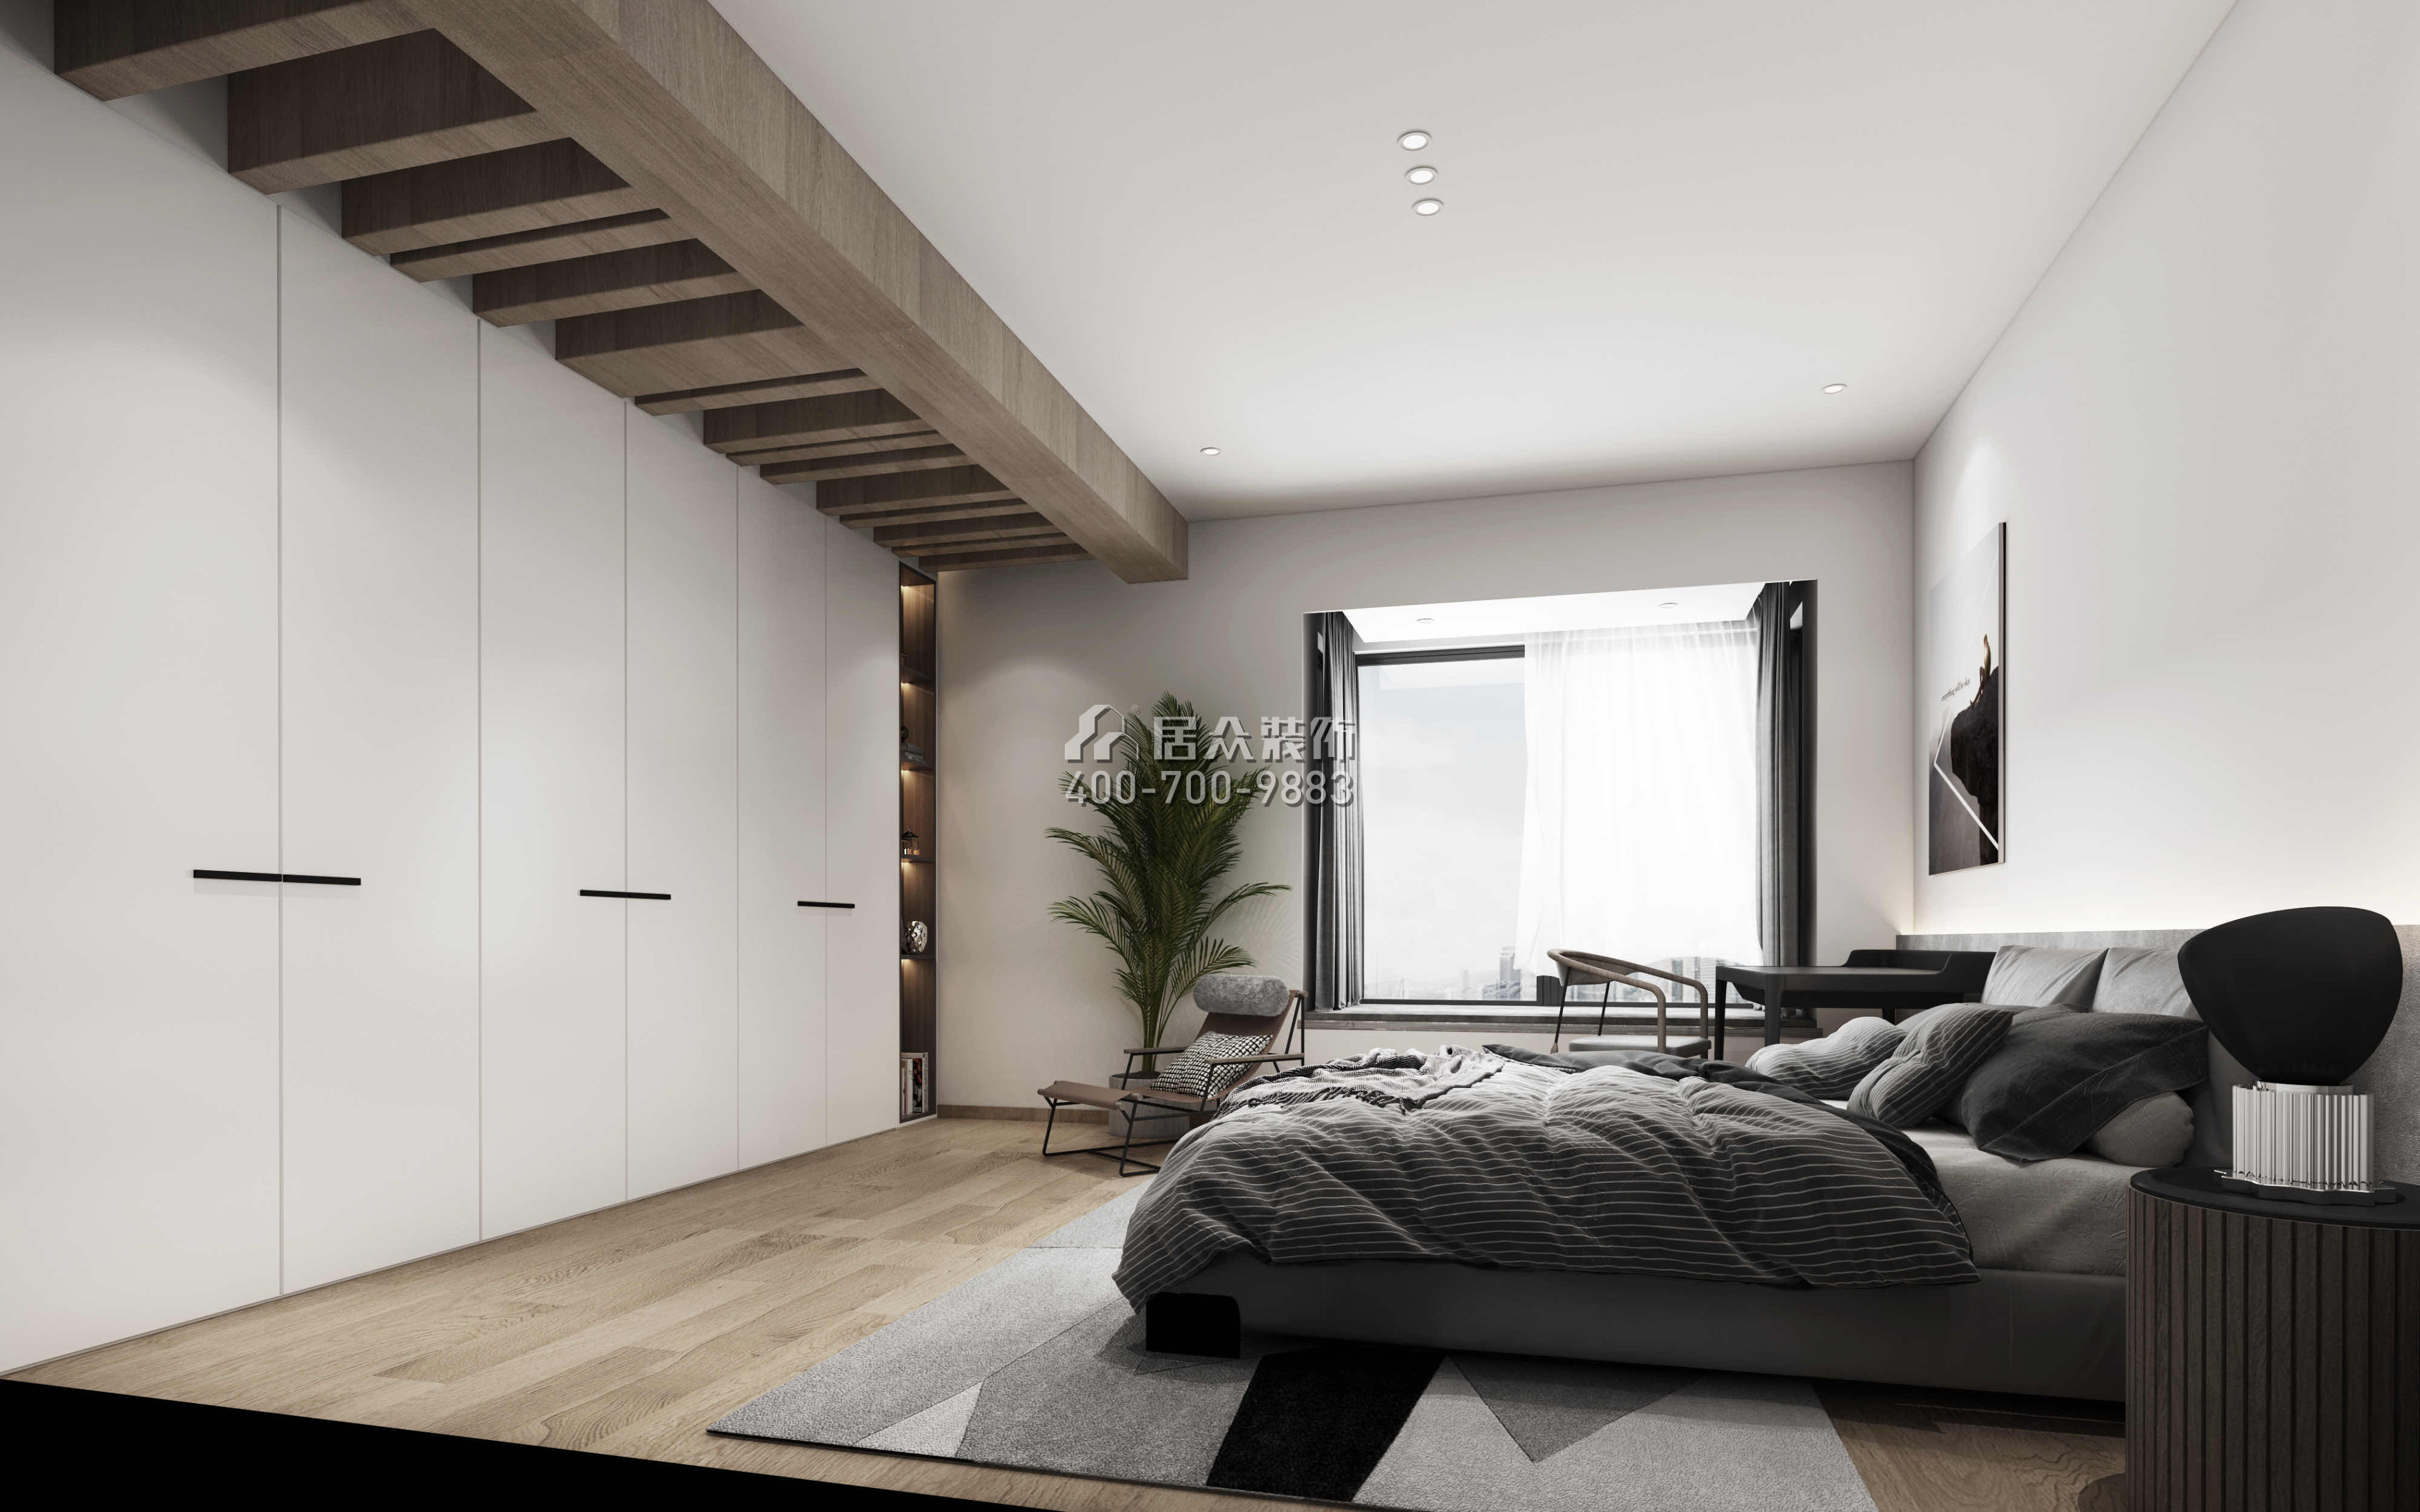 天鵝堡二期245平方米現代簡約風格平層戶型臥室裝修效果圖